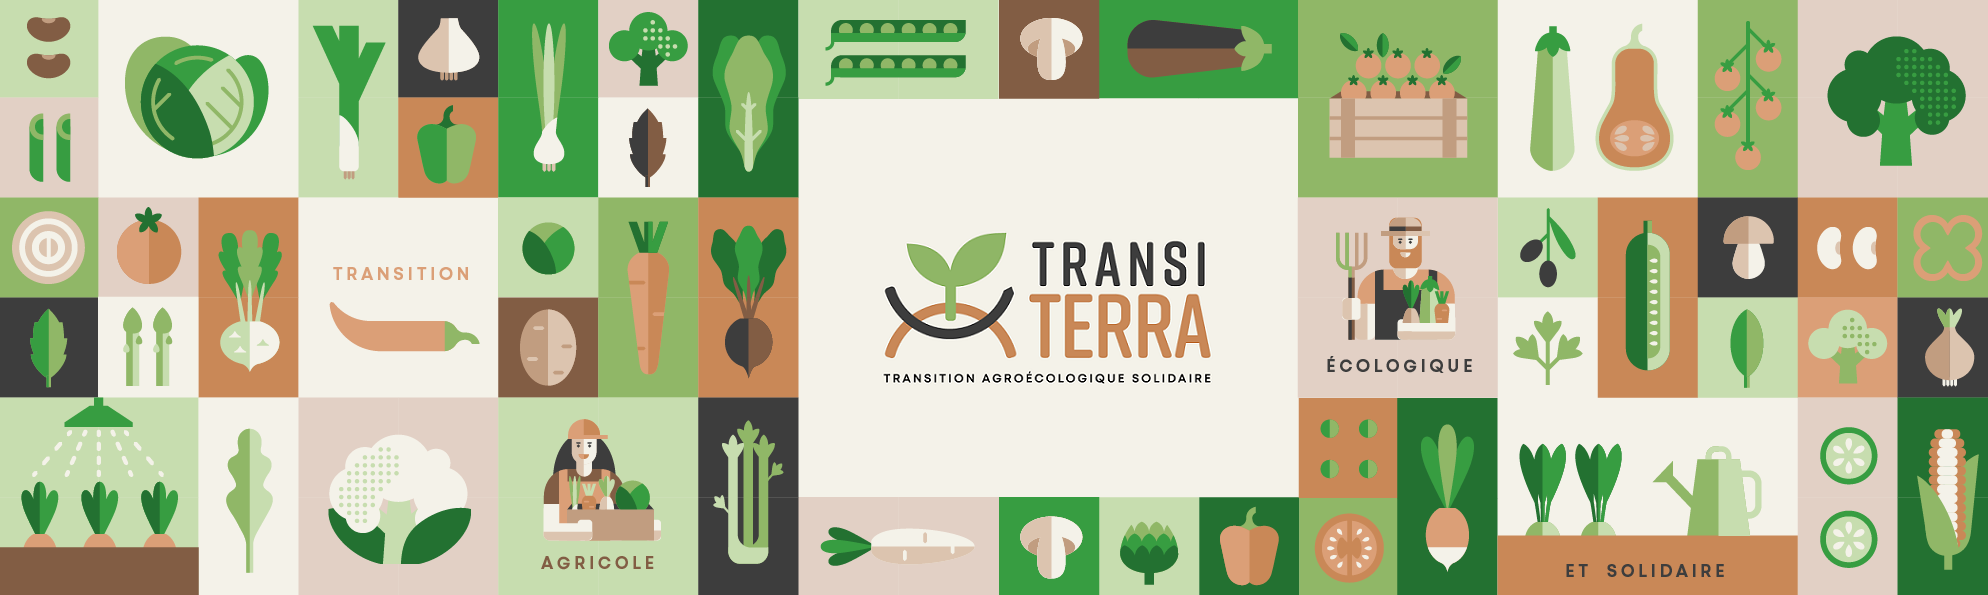 Bannière TransiTerra avec légumes